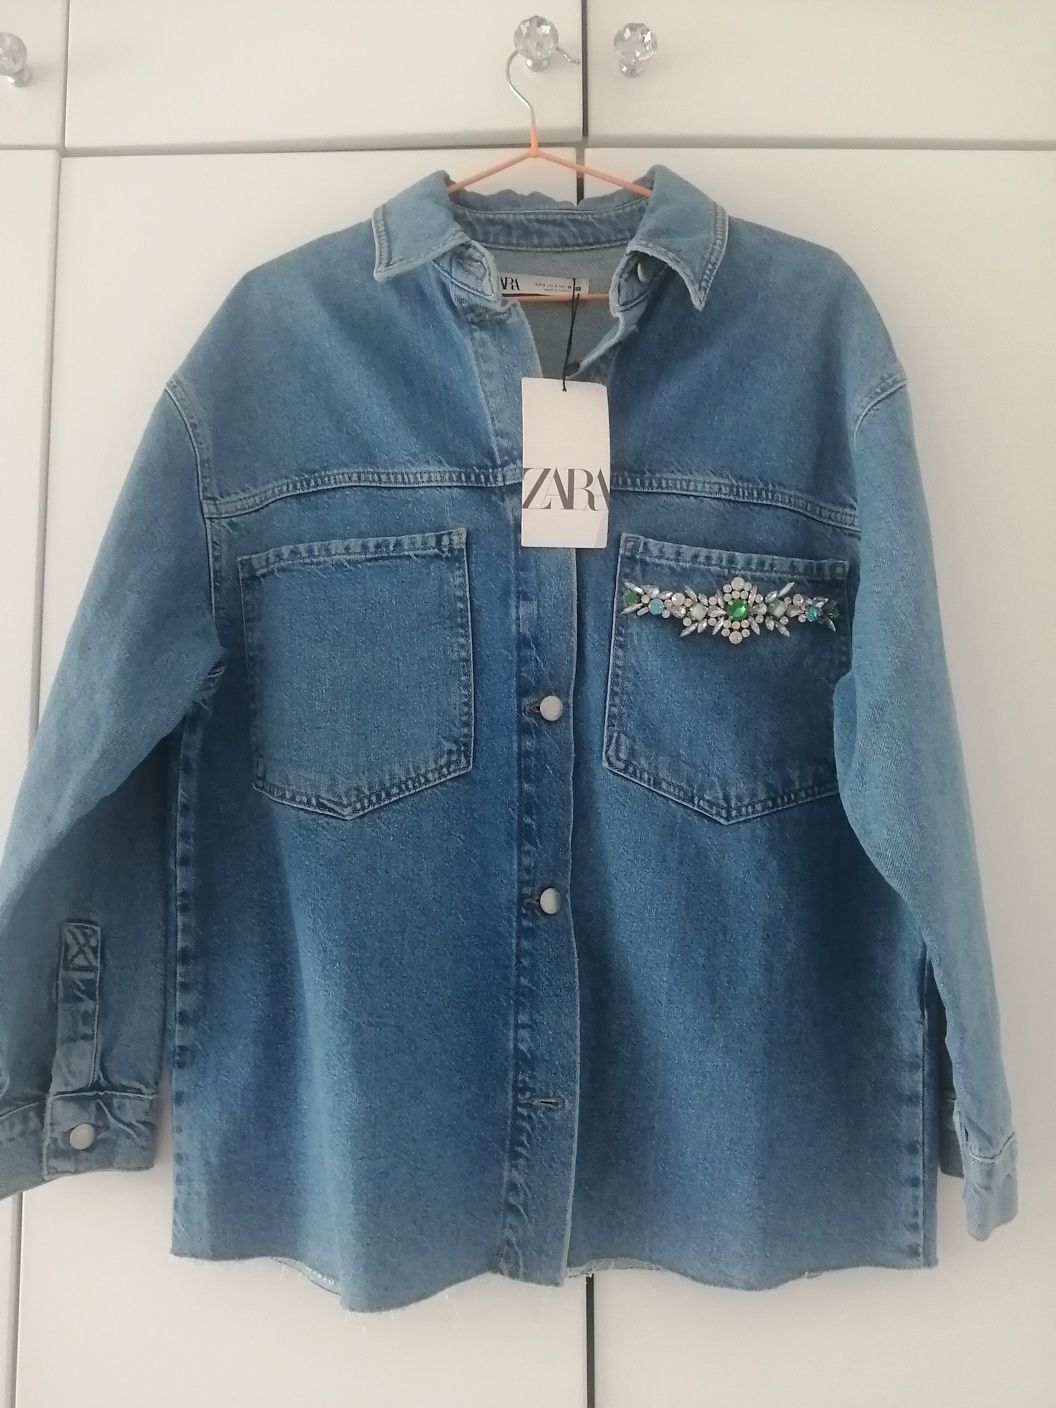 Продаётся новая джинсовая рубашка, ветровка, джинсовая куртка Zara